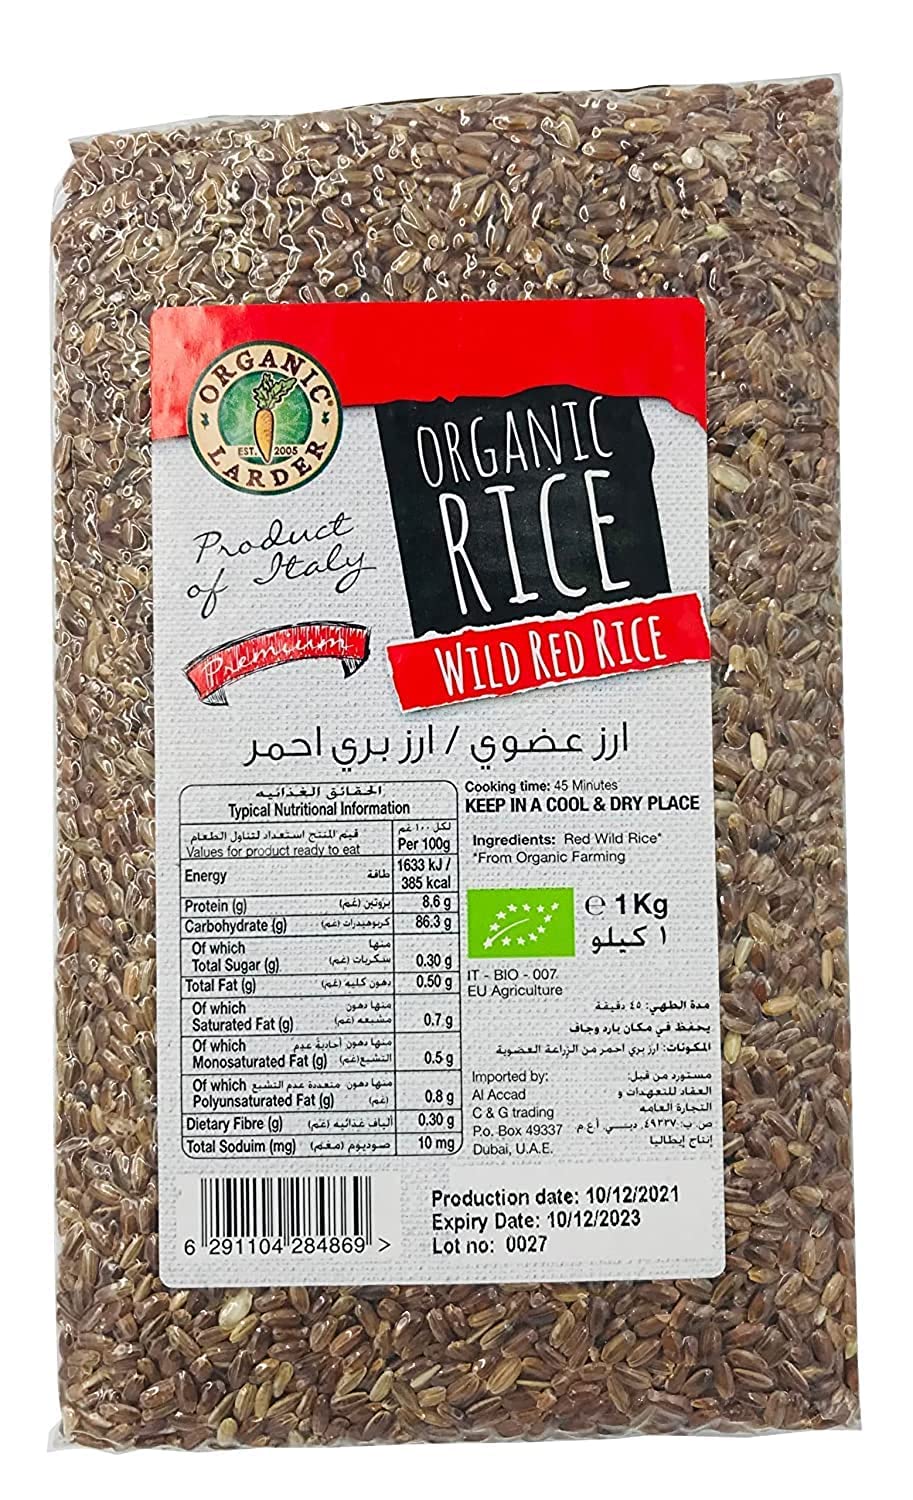 ORGANIC LARDER Organic Wild Red Rice, 1Kg - Organic, Natural